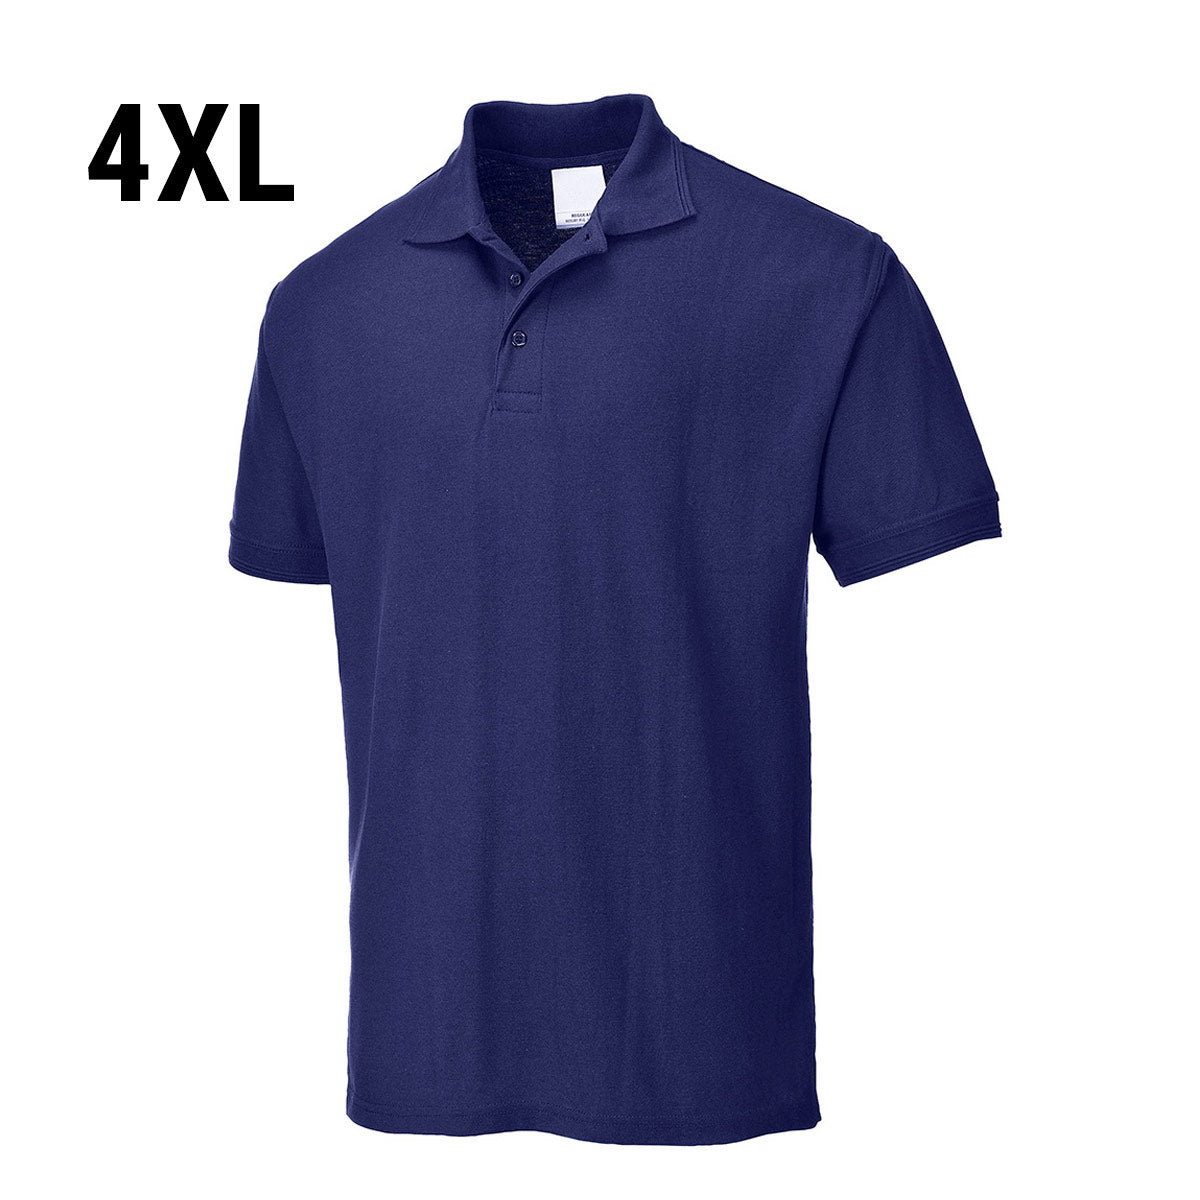 Polo shirt til mænd - Navy - Størrelse: 4XL